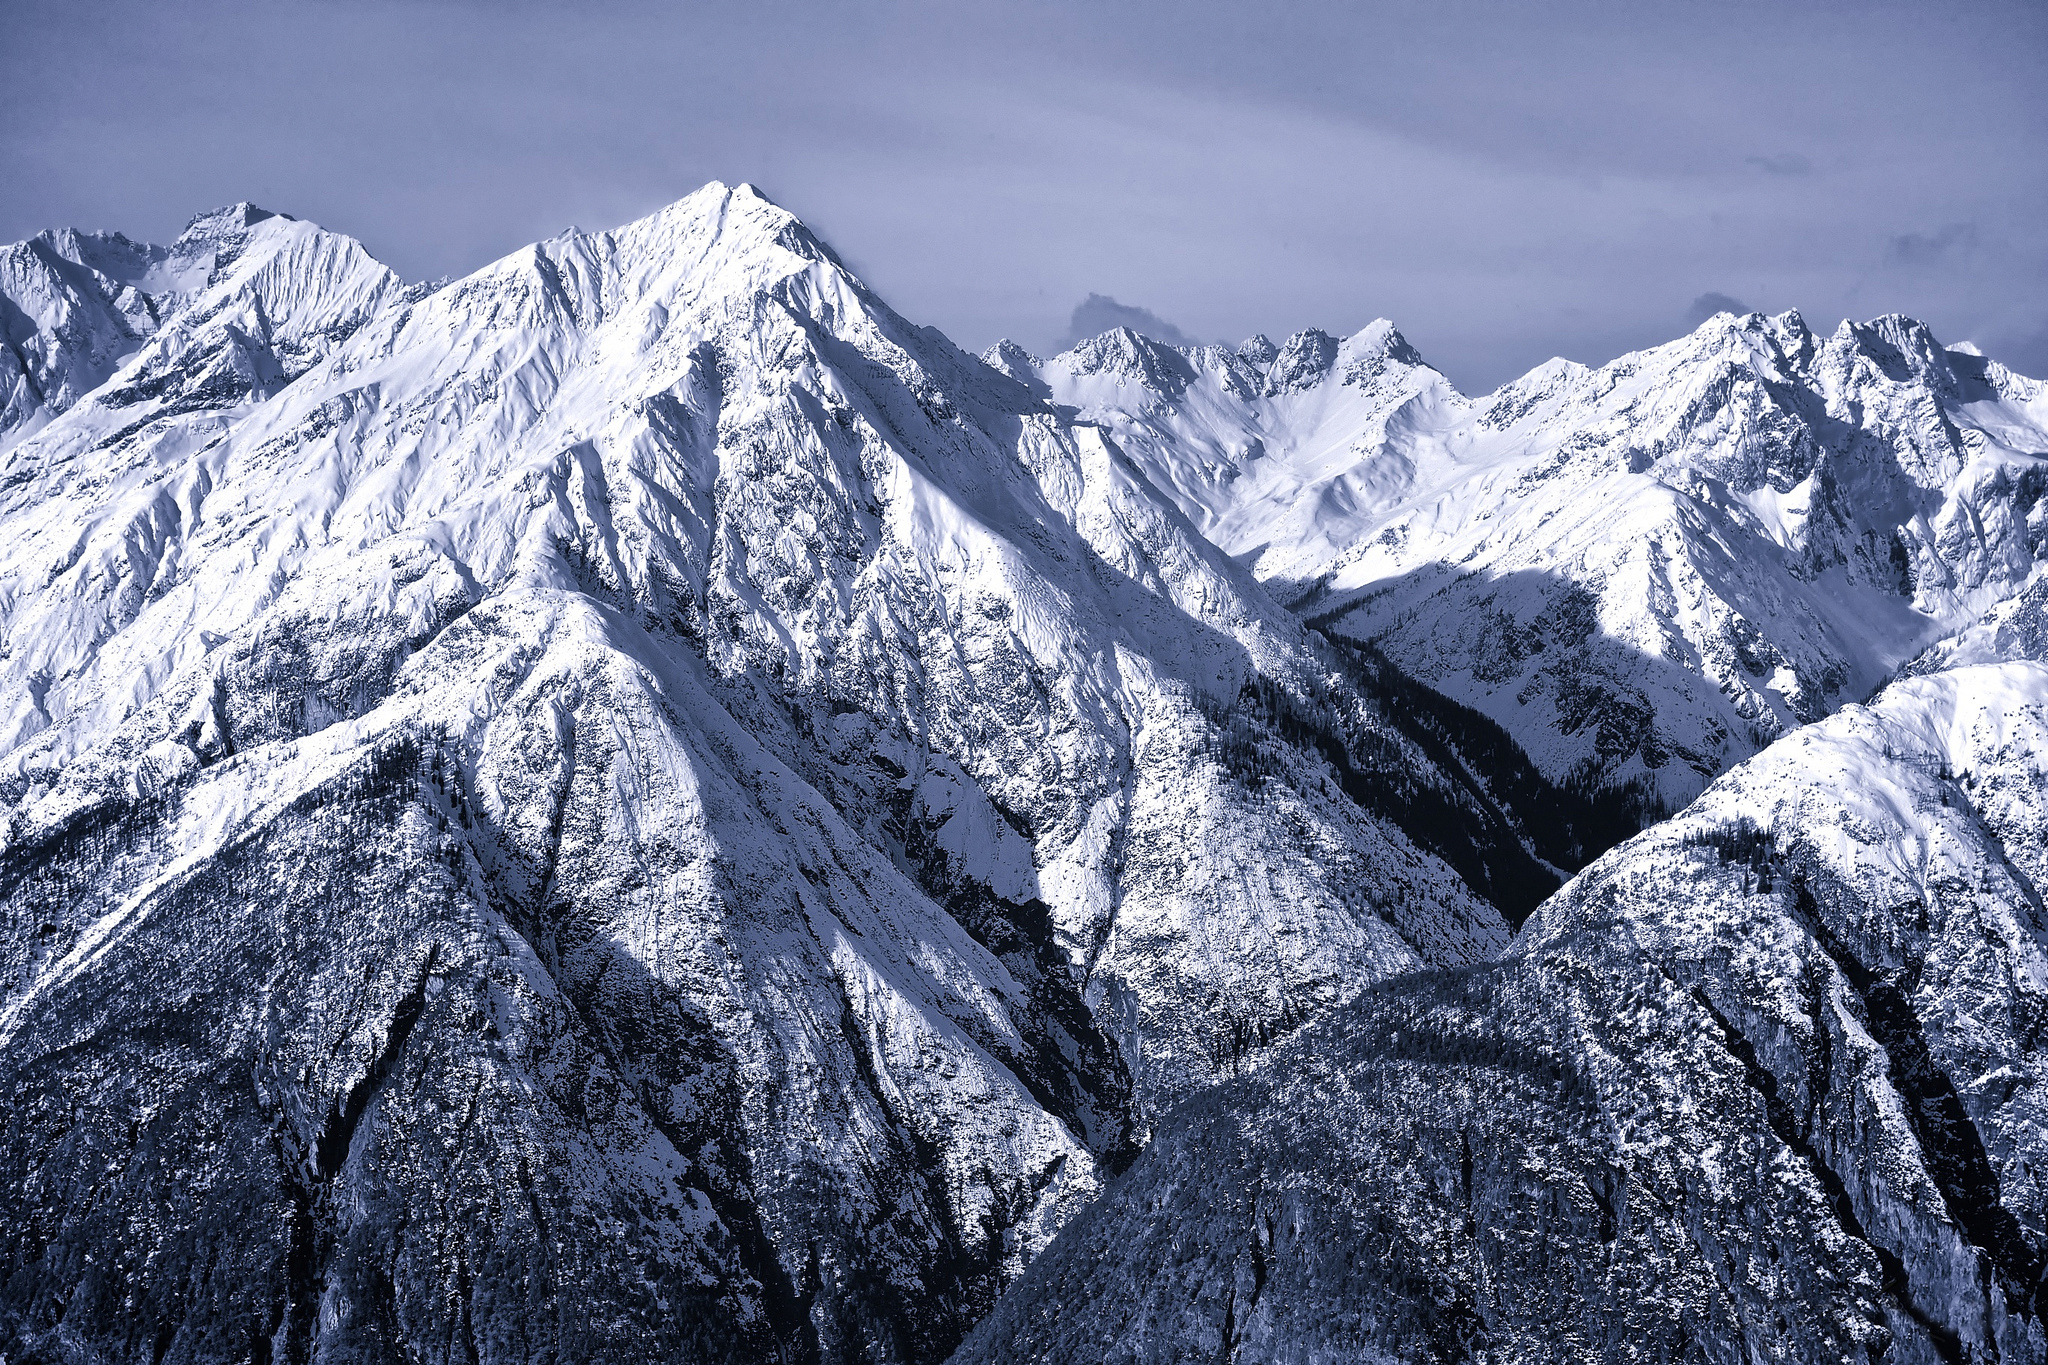 Gora. Гольцы горные вершины Альпы. Северные известняковые Альпы. Заснеженные горы Сванетия. Горная система Альп.